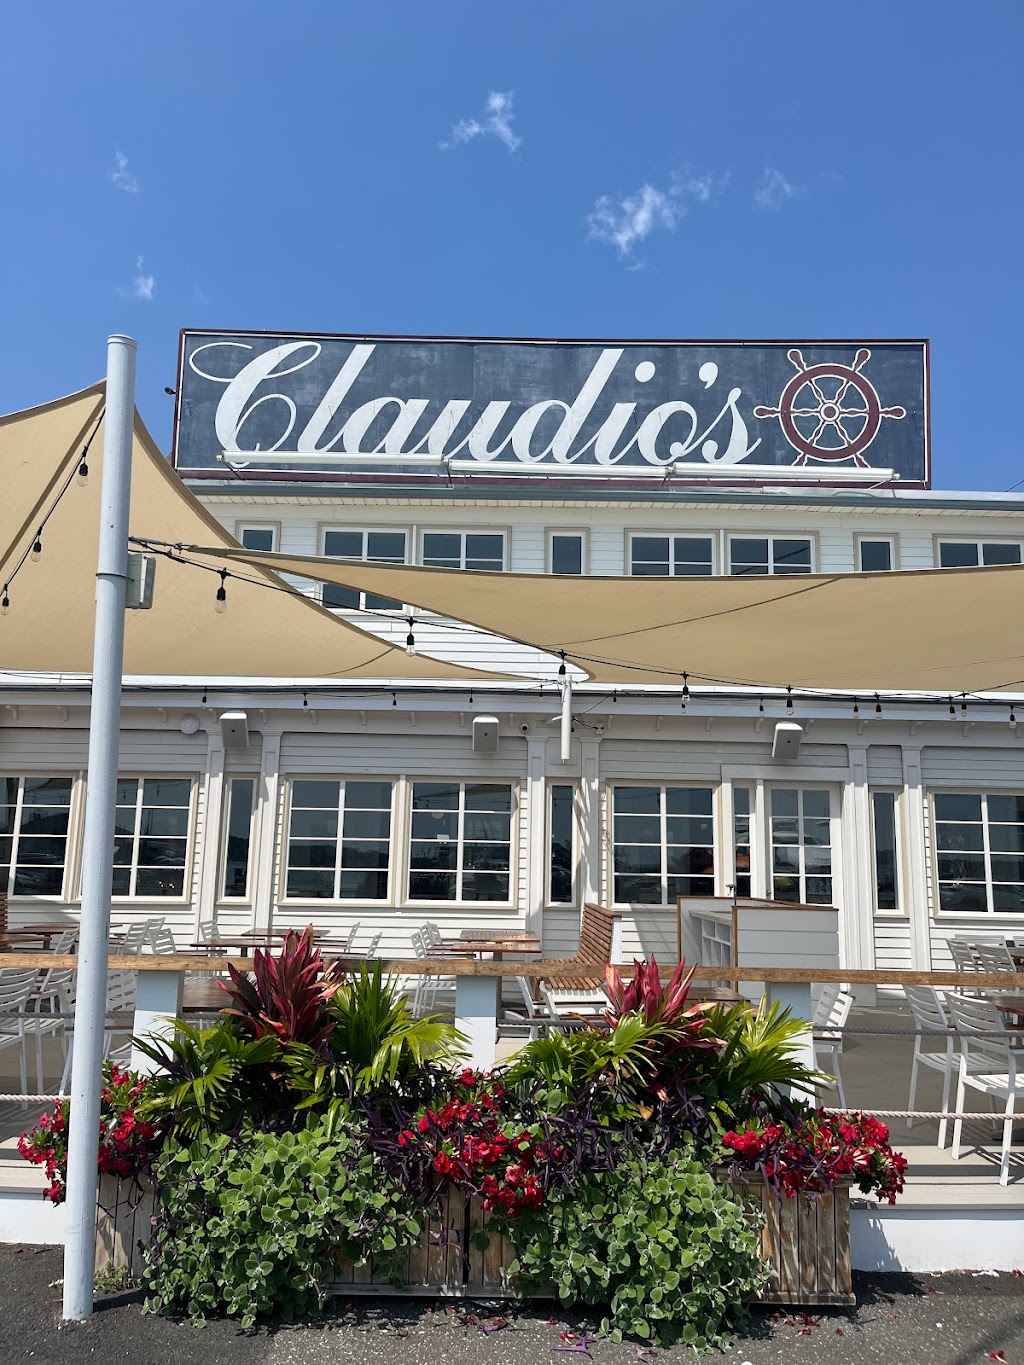 Claudios Tavern & Grill | 111 Main St, Greenport, NY 11944 | Phone: (631) 477-0627